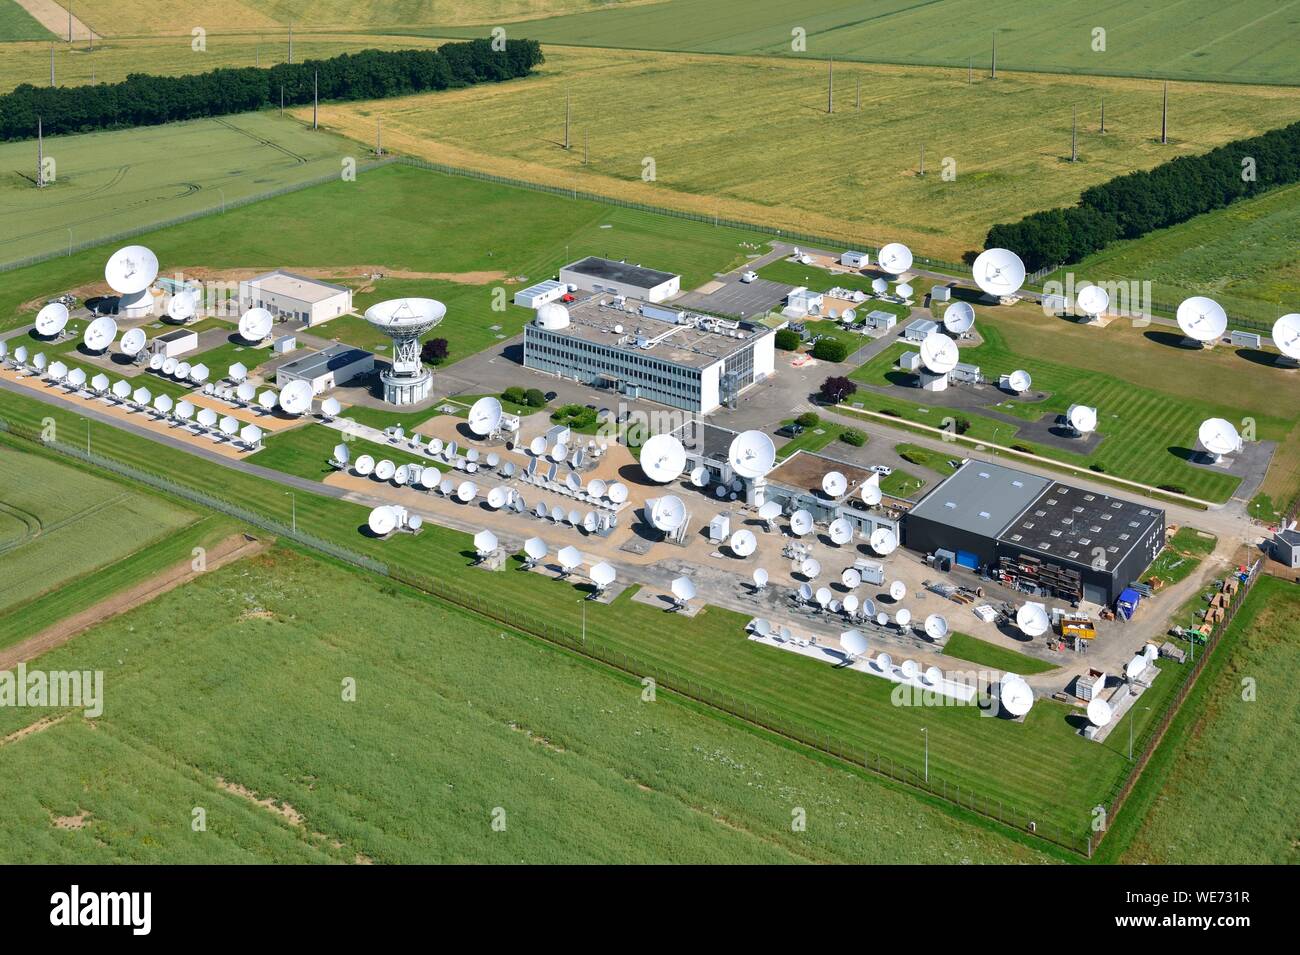 France, Eure et Loir, la Grande touche, Receiving center telecom (aerial view) Stock Photo